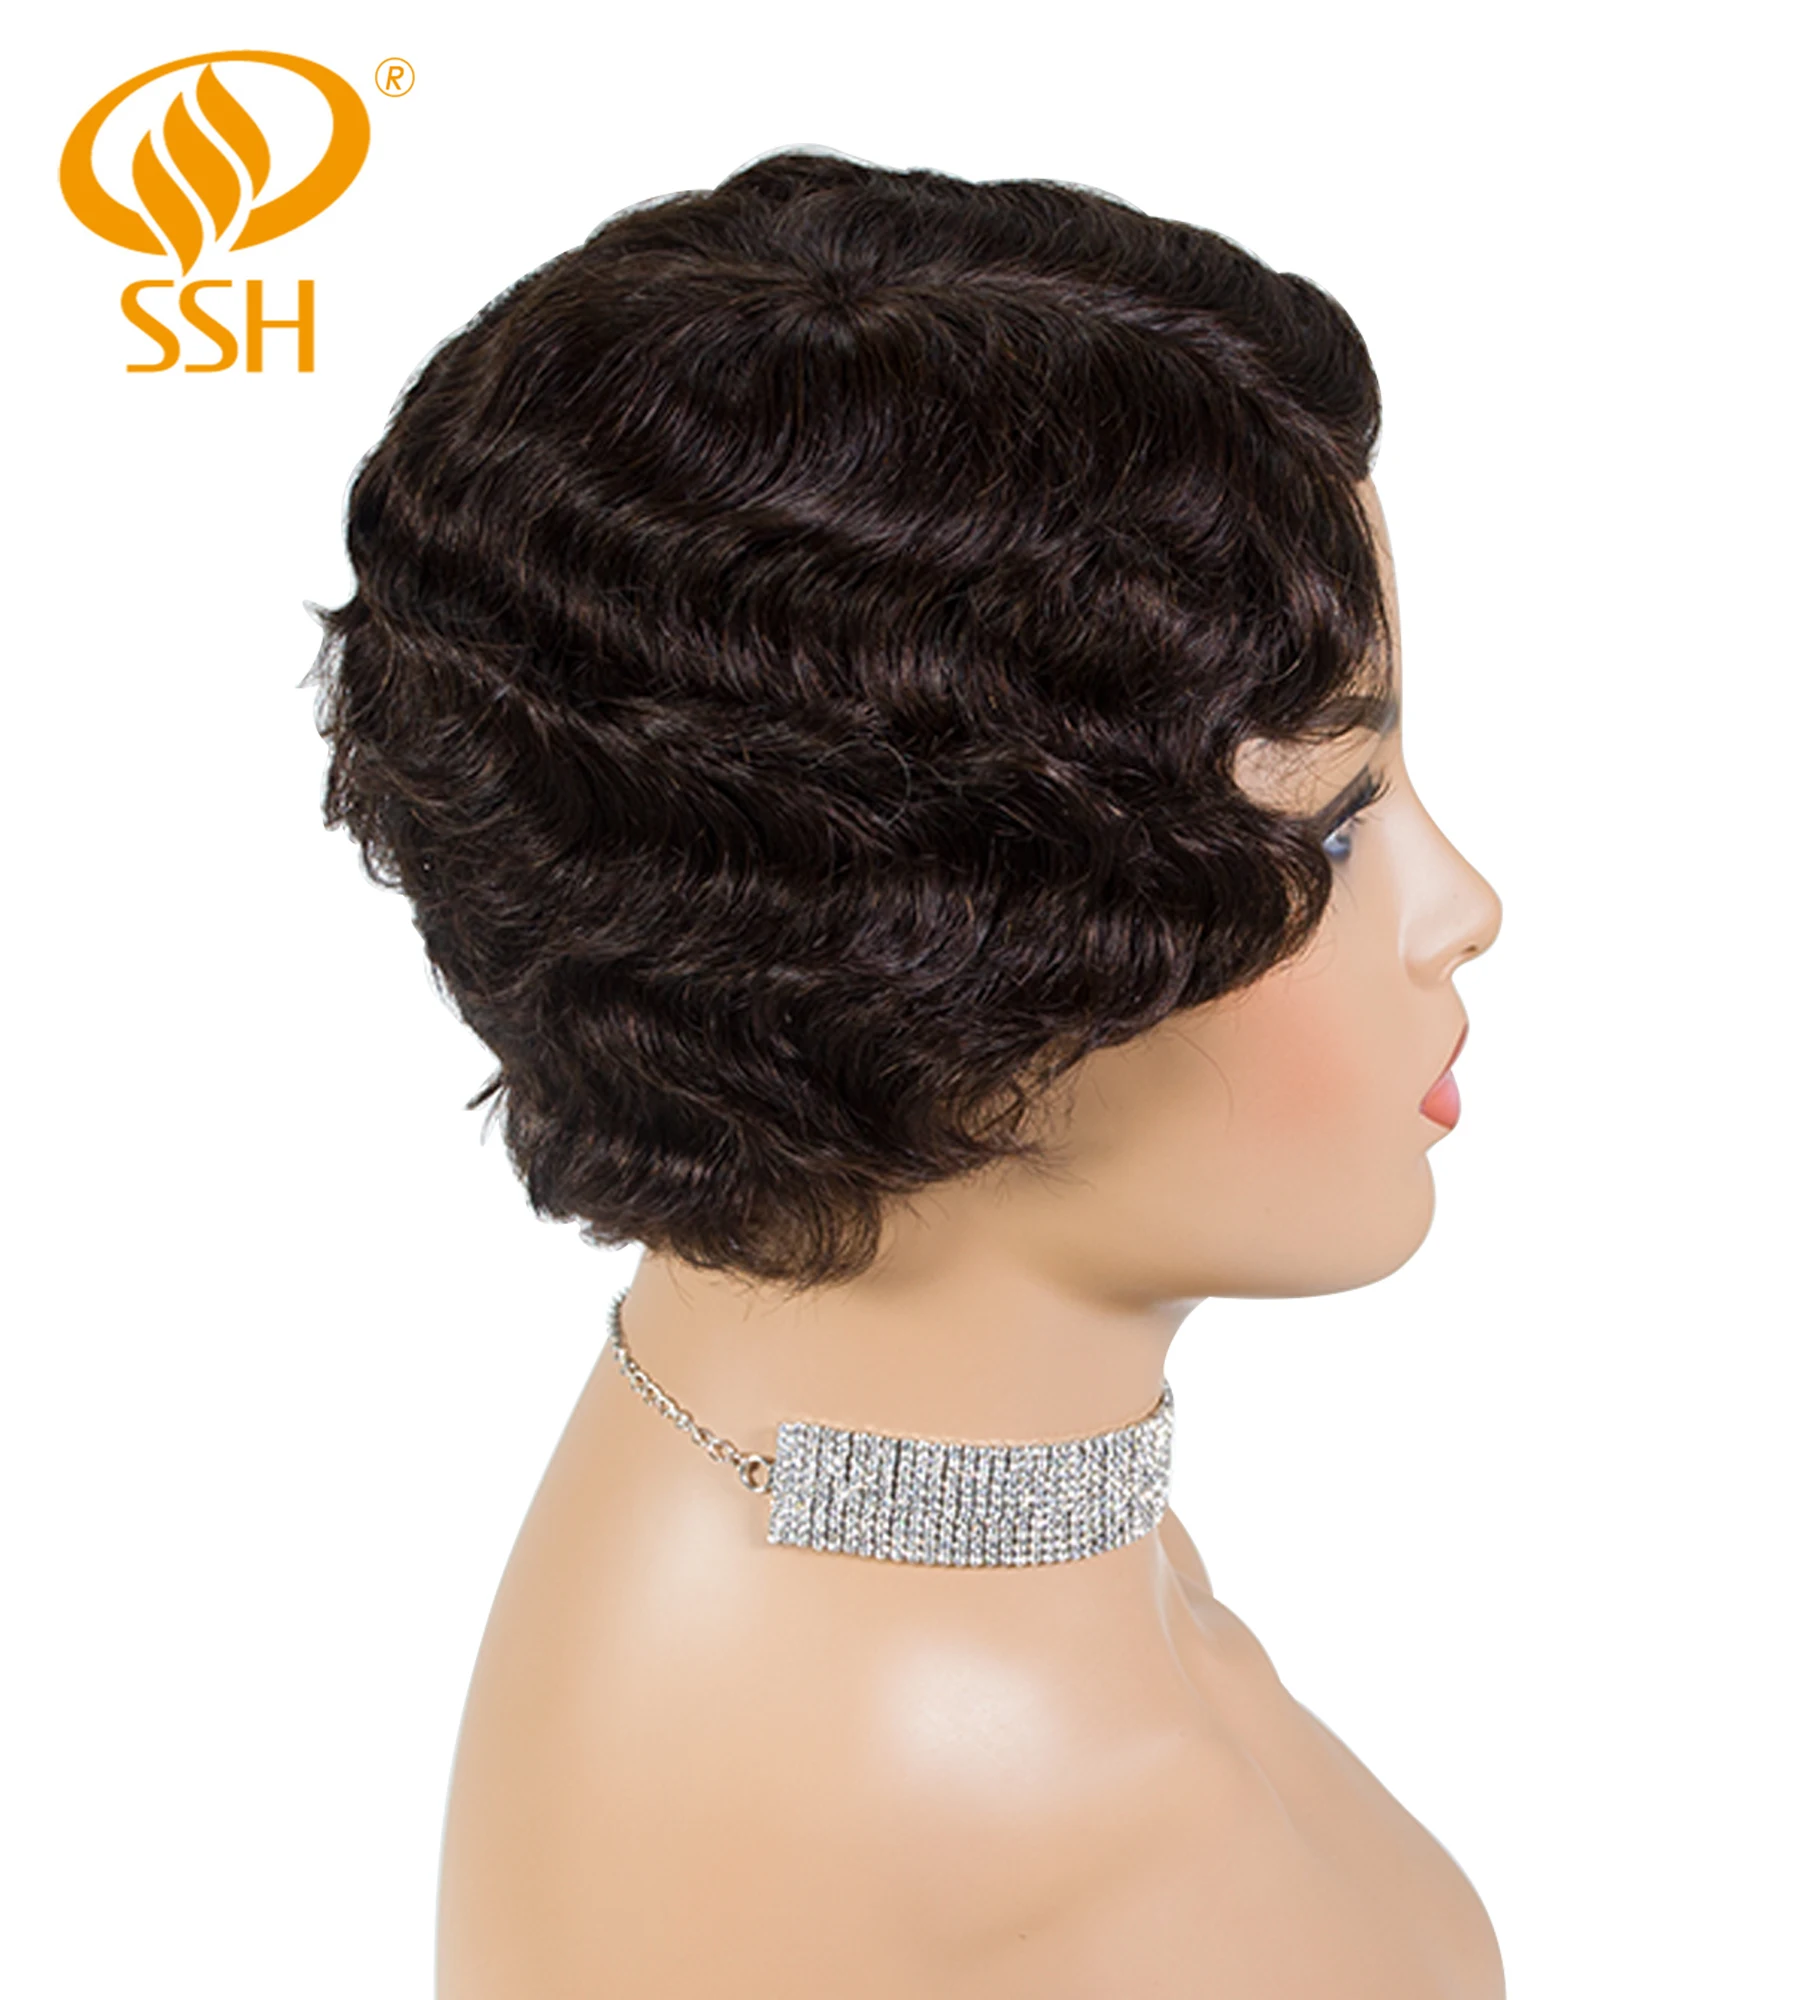 SSH Non-Remy человеческие волосы короткие Pixie Cut парик 1920's стрижка флэппер для женщин короткий палец волна ретро стиль парик косплей